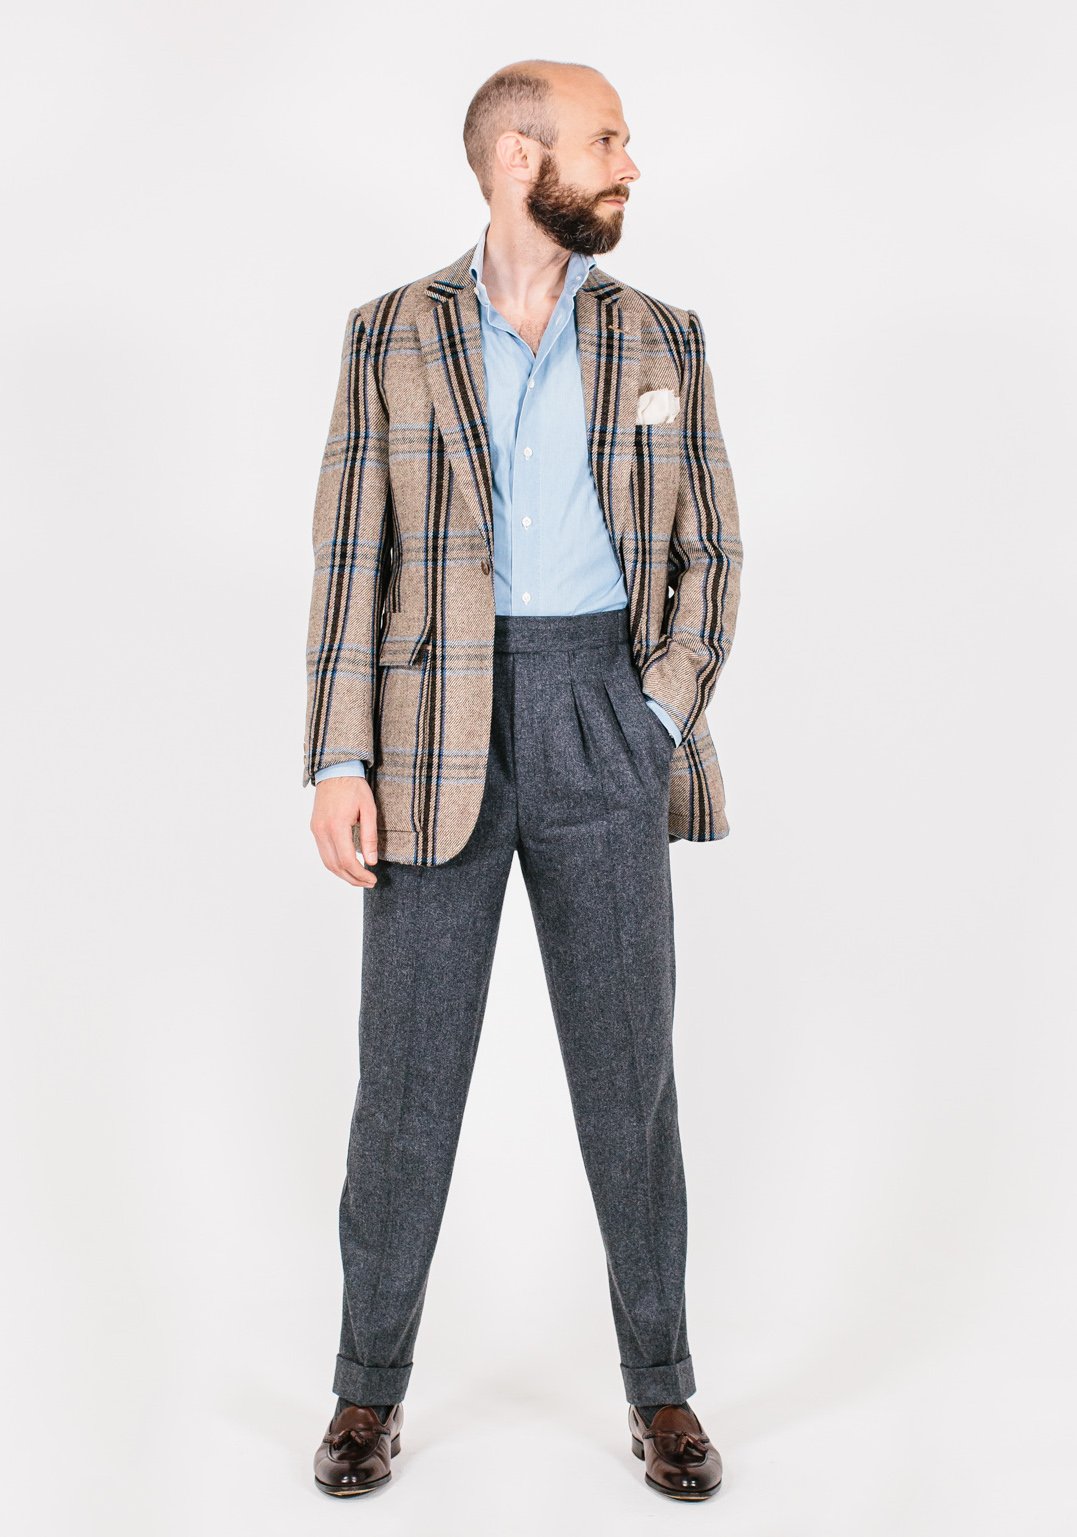 Huntsman Style breakdown – jacket: Style Permanent tweed